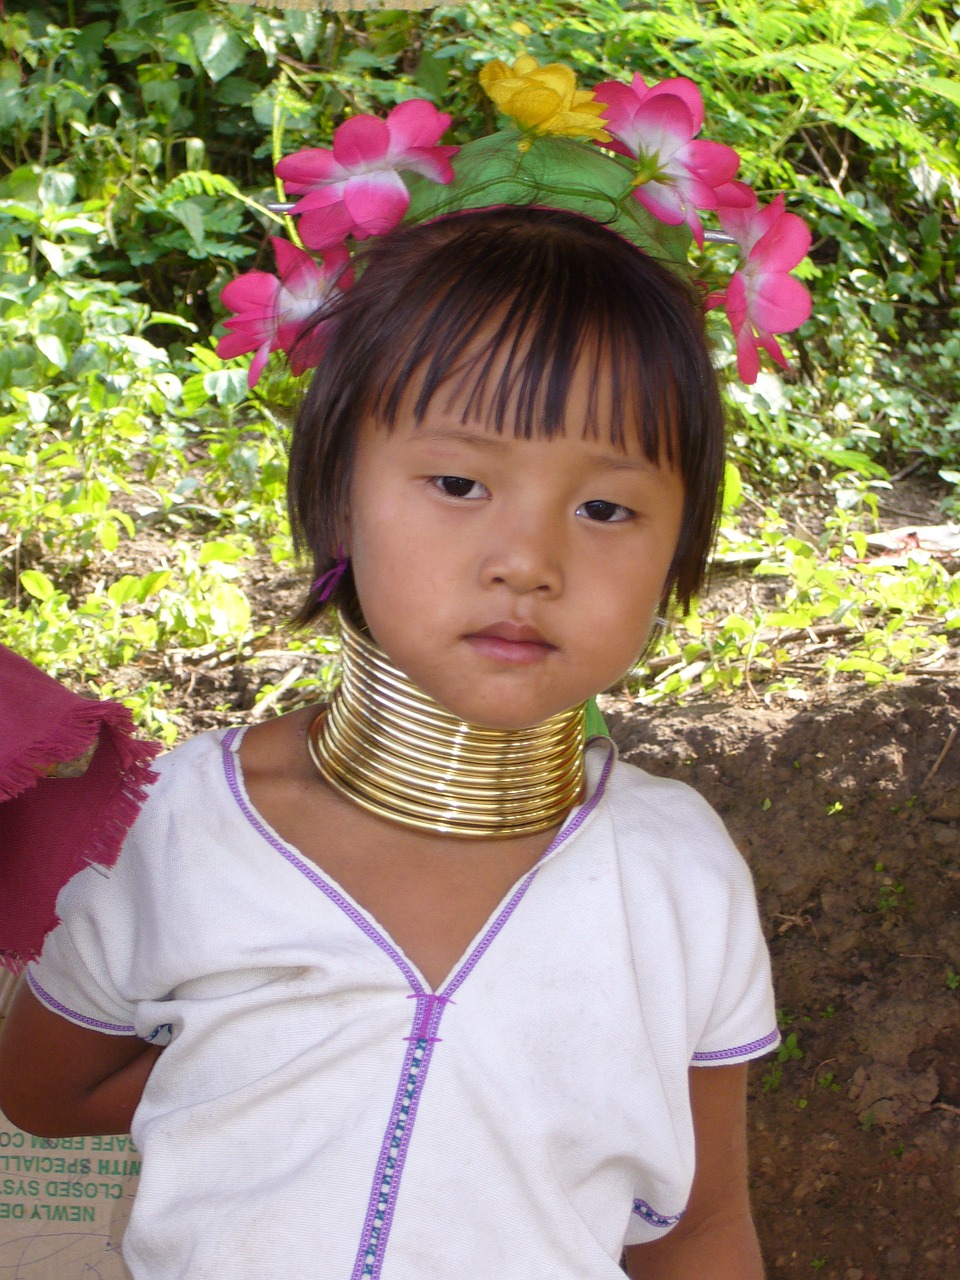 Kayan Lahwi Girl, Mergaitė, Kayan Žmonės, Burma, Padaung, Kayan, Žmonės, Vaikai, Veidas, Vaikas